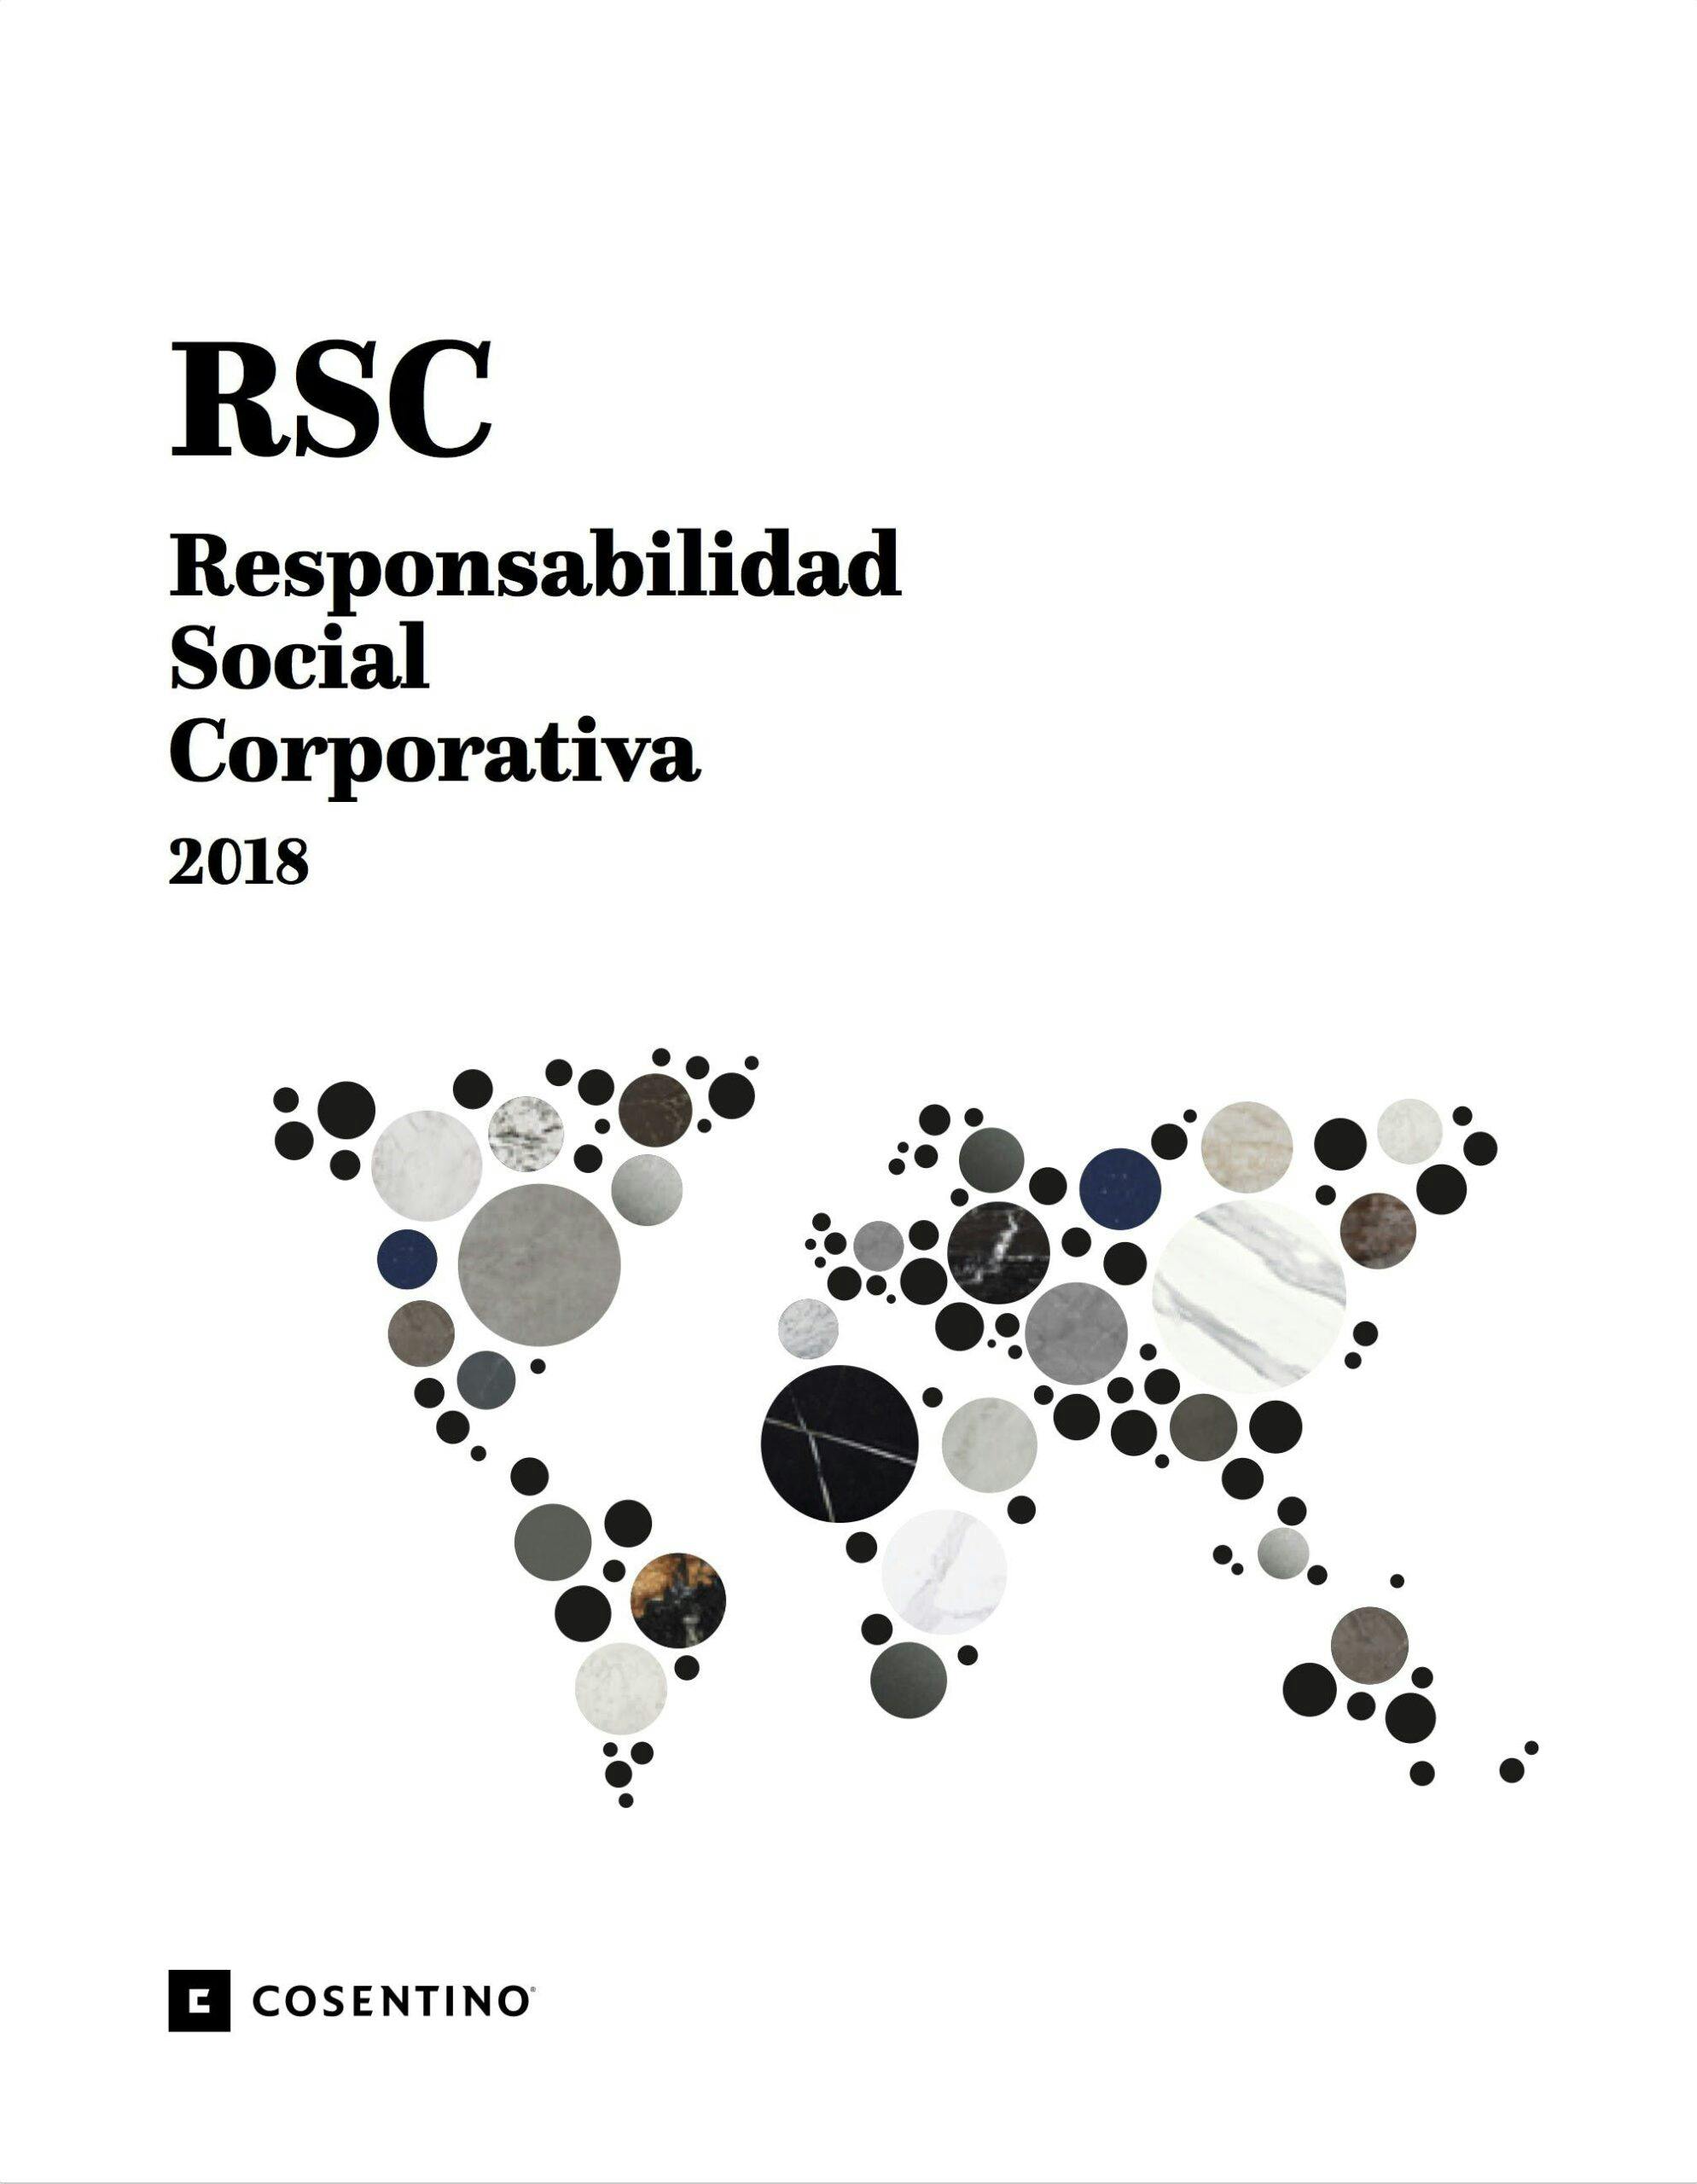 Imagen número 75 de Cosentino presenta su Informe de RSC 2018